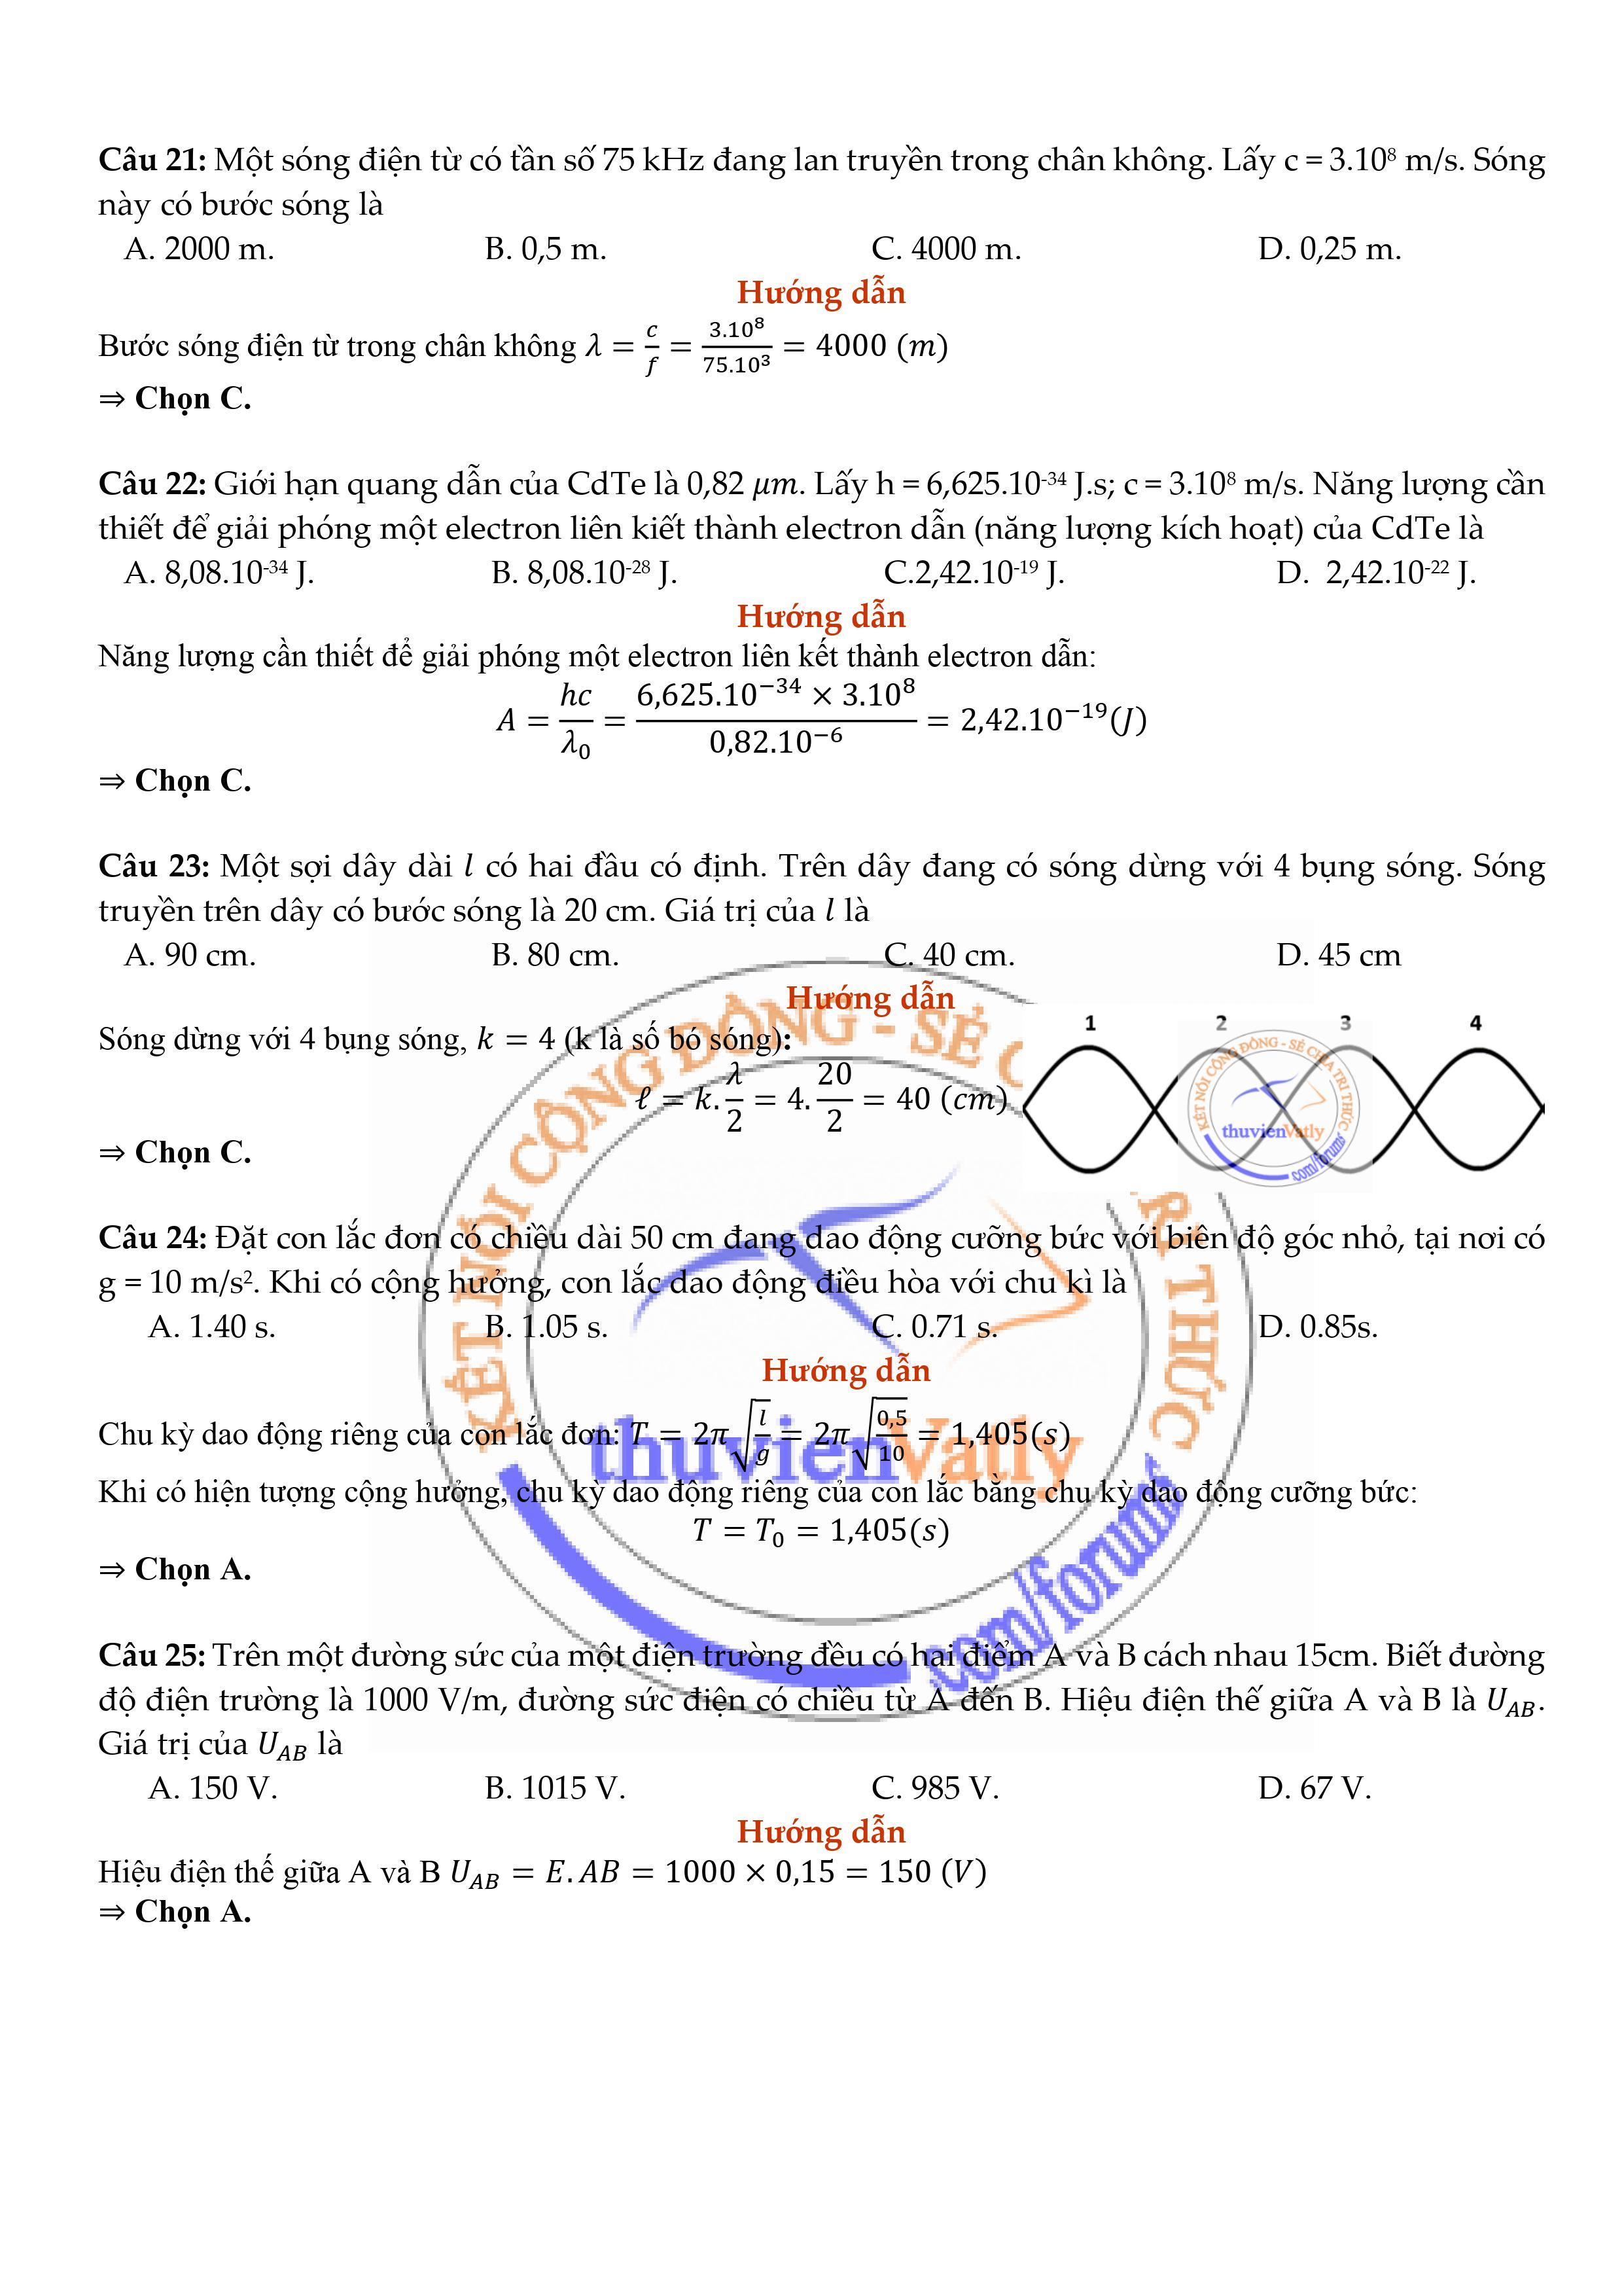 Trang 5 - Giải chi tiết mã đề 206 môn Vật Lý đề thi TN THPT 2020